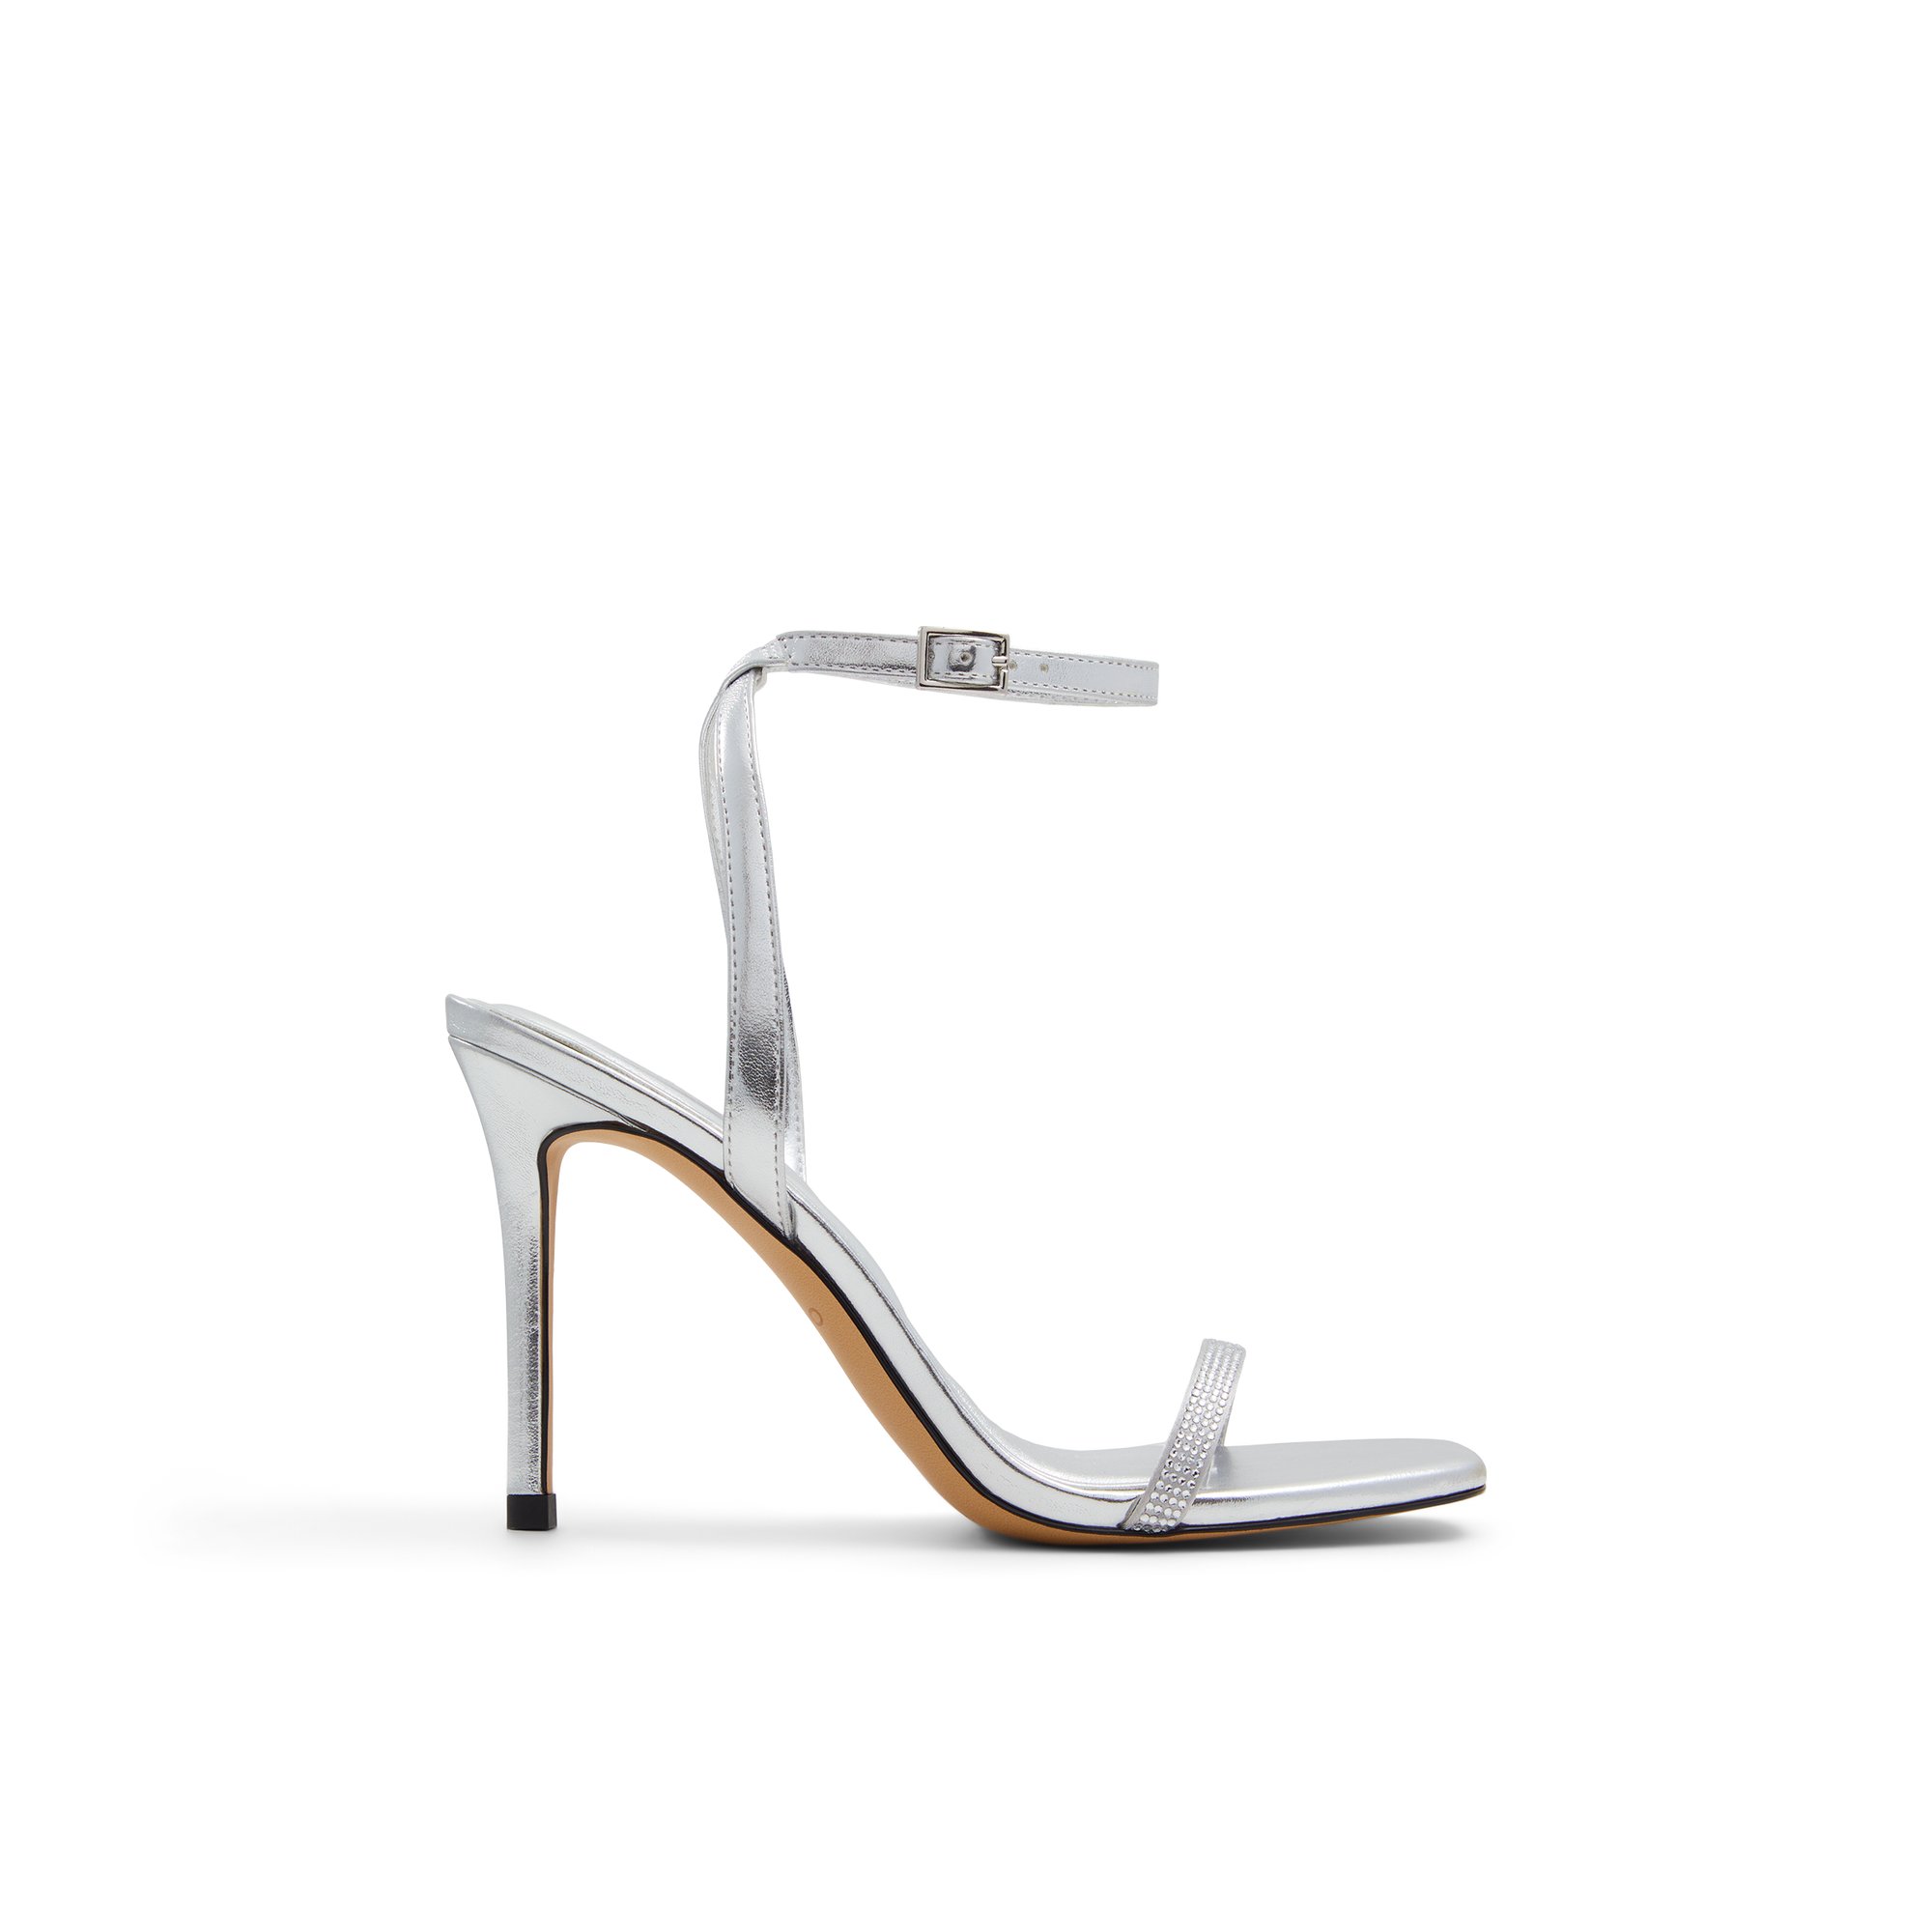 ALDO Maude - Women's Sandals Strappy - Silver